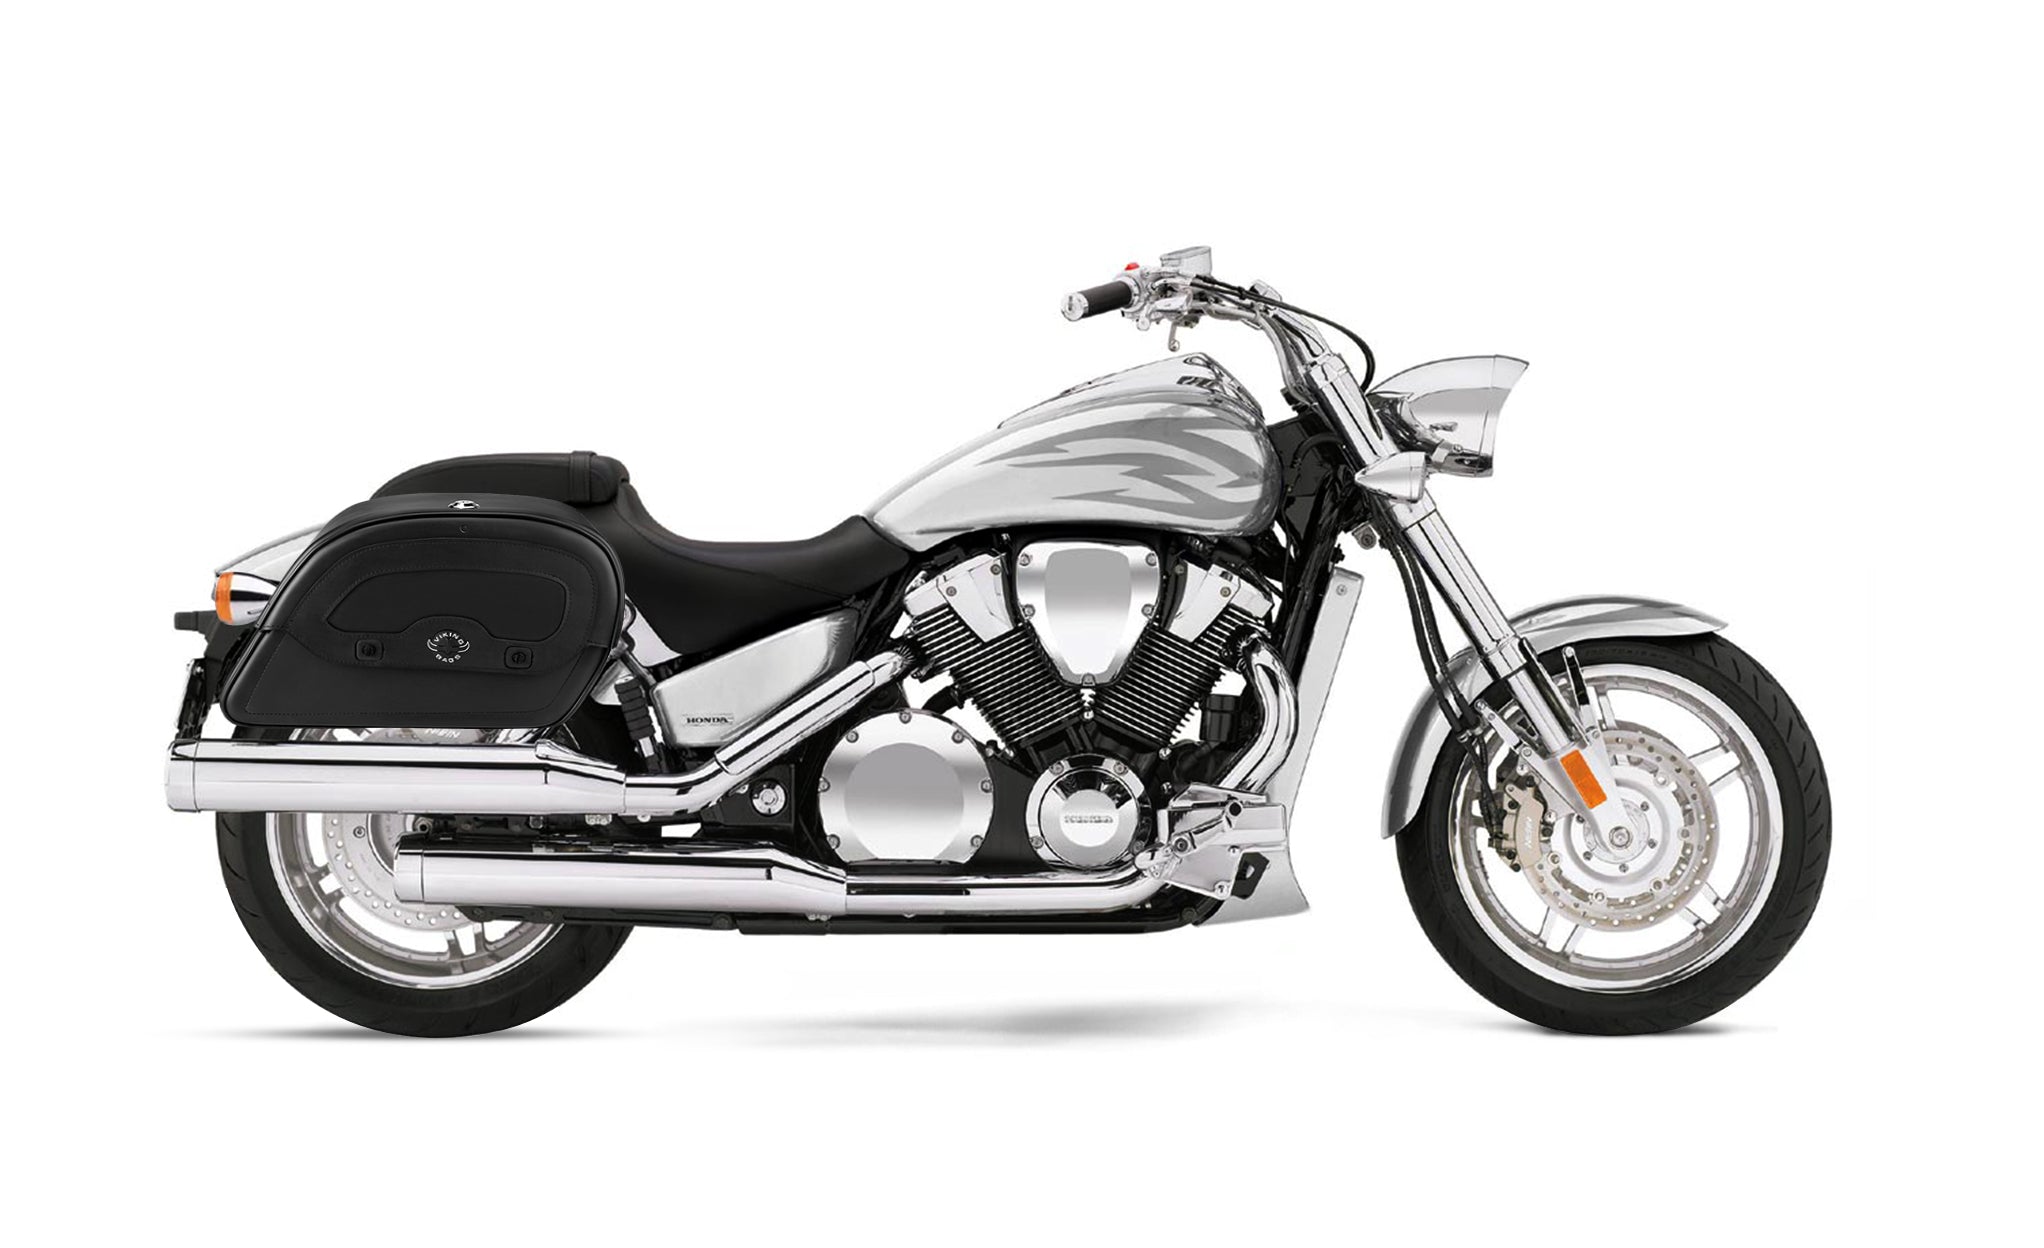 Viking Warrior Large Honda Vtx 1800 F Shock Cut Out Leather Motorcycle Saddlebags on Bike Photo @expand